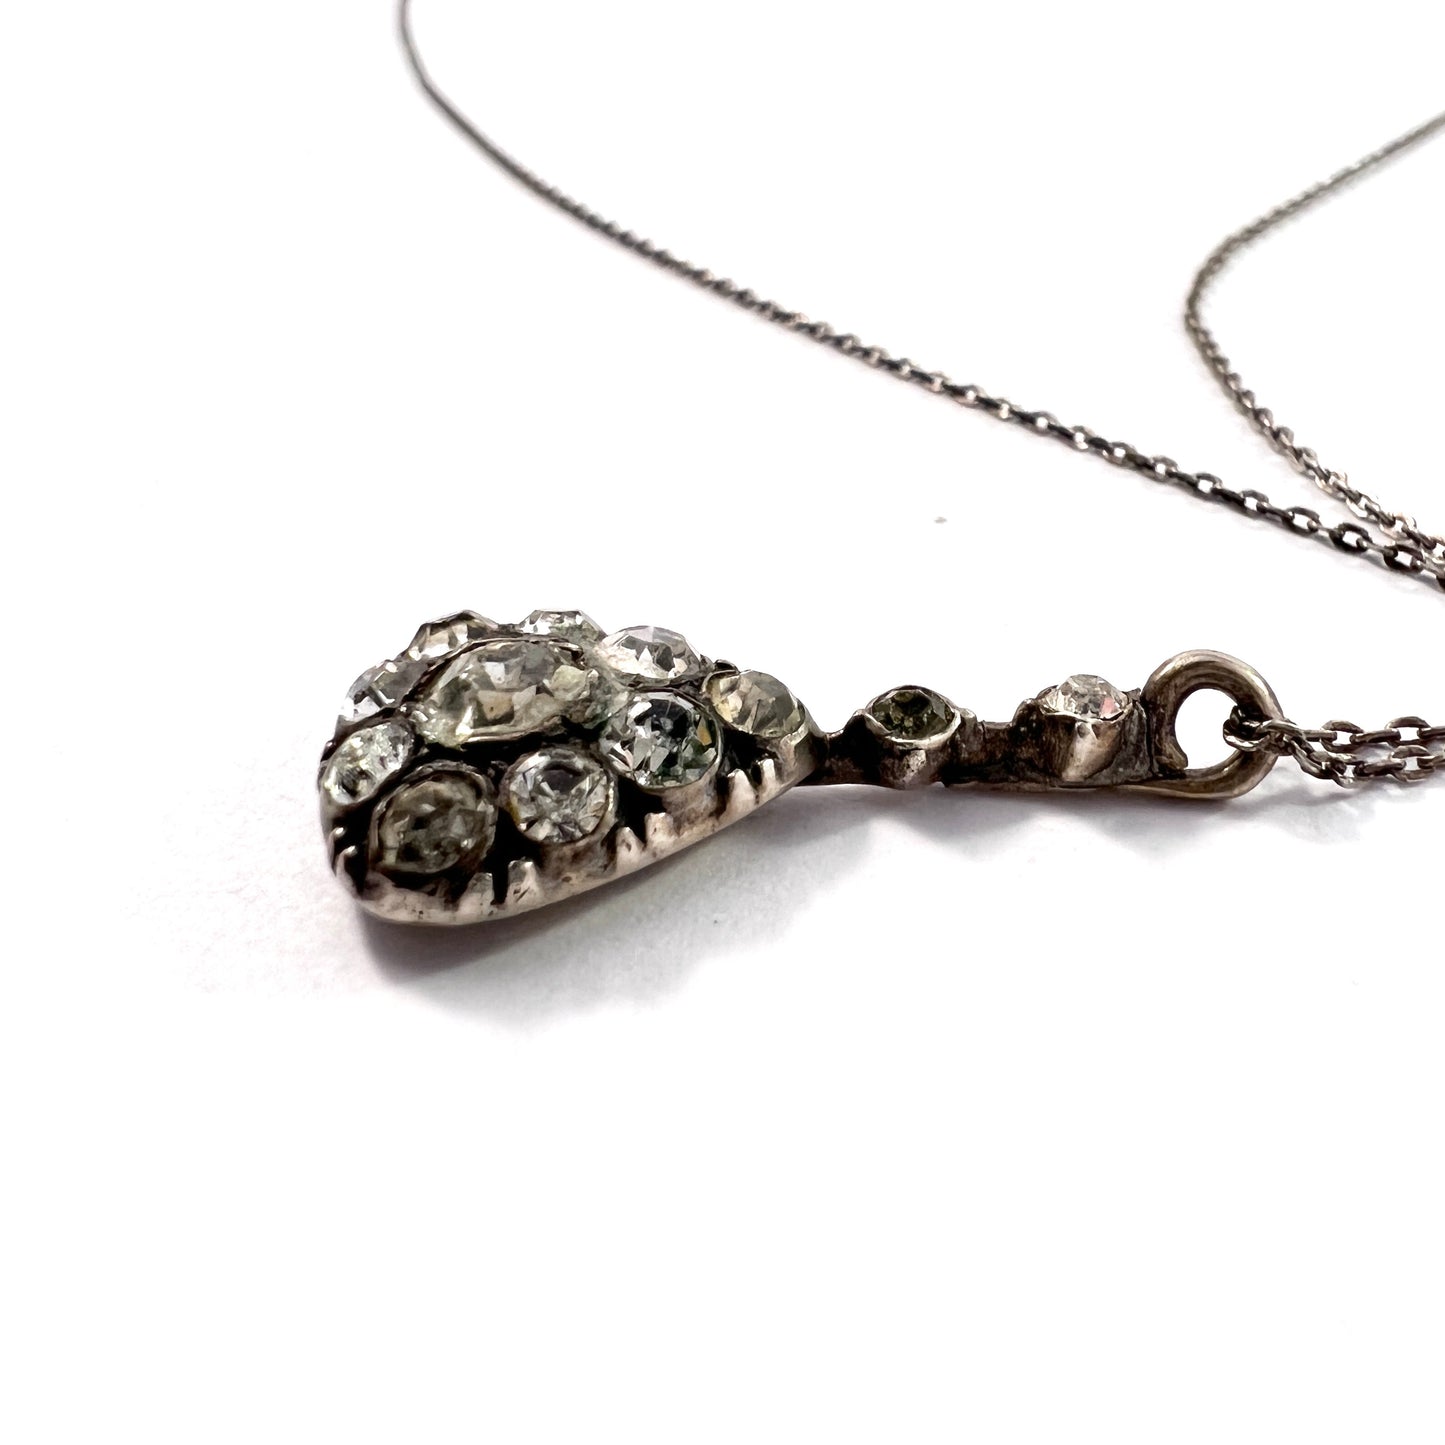 Knoll & Pregizer, Germany 1920s 830 Silver Foil-Back Paste Stone Pendant Necklace.